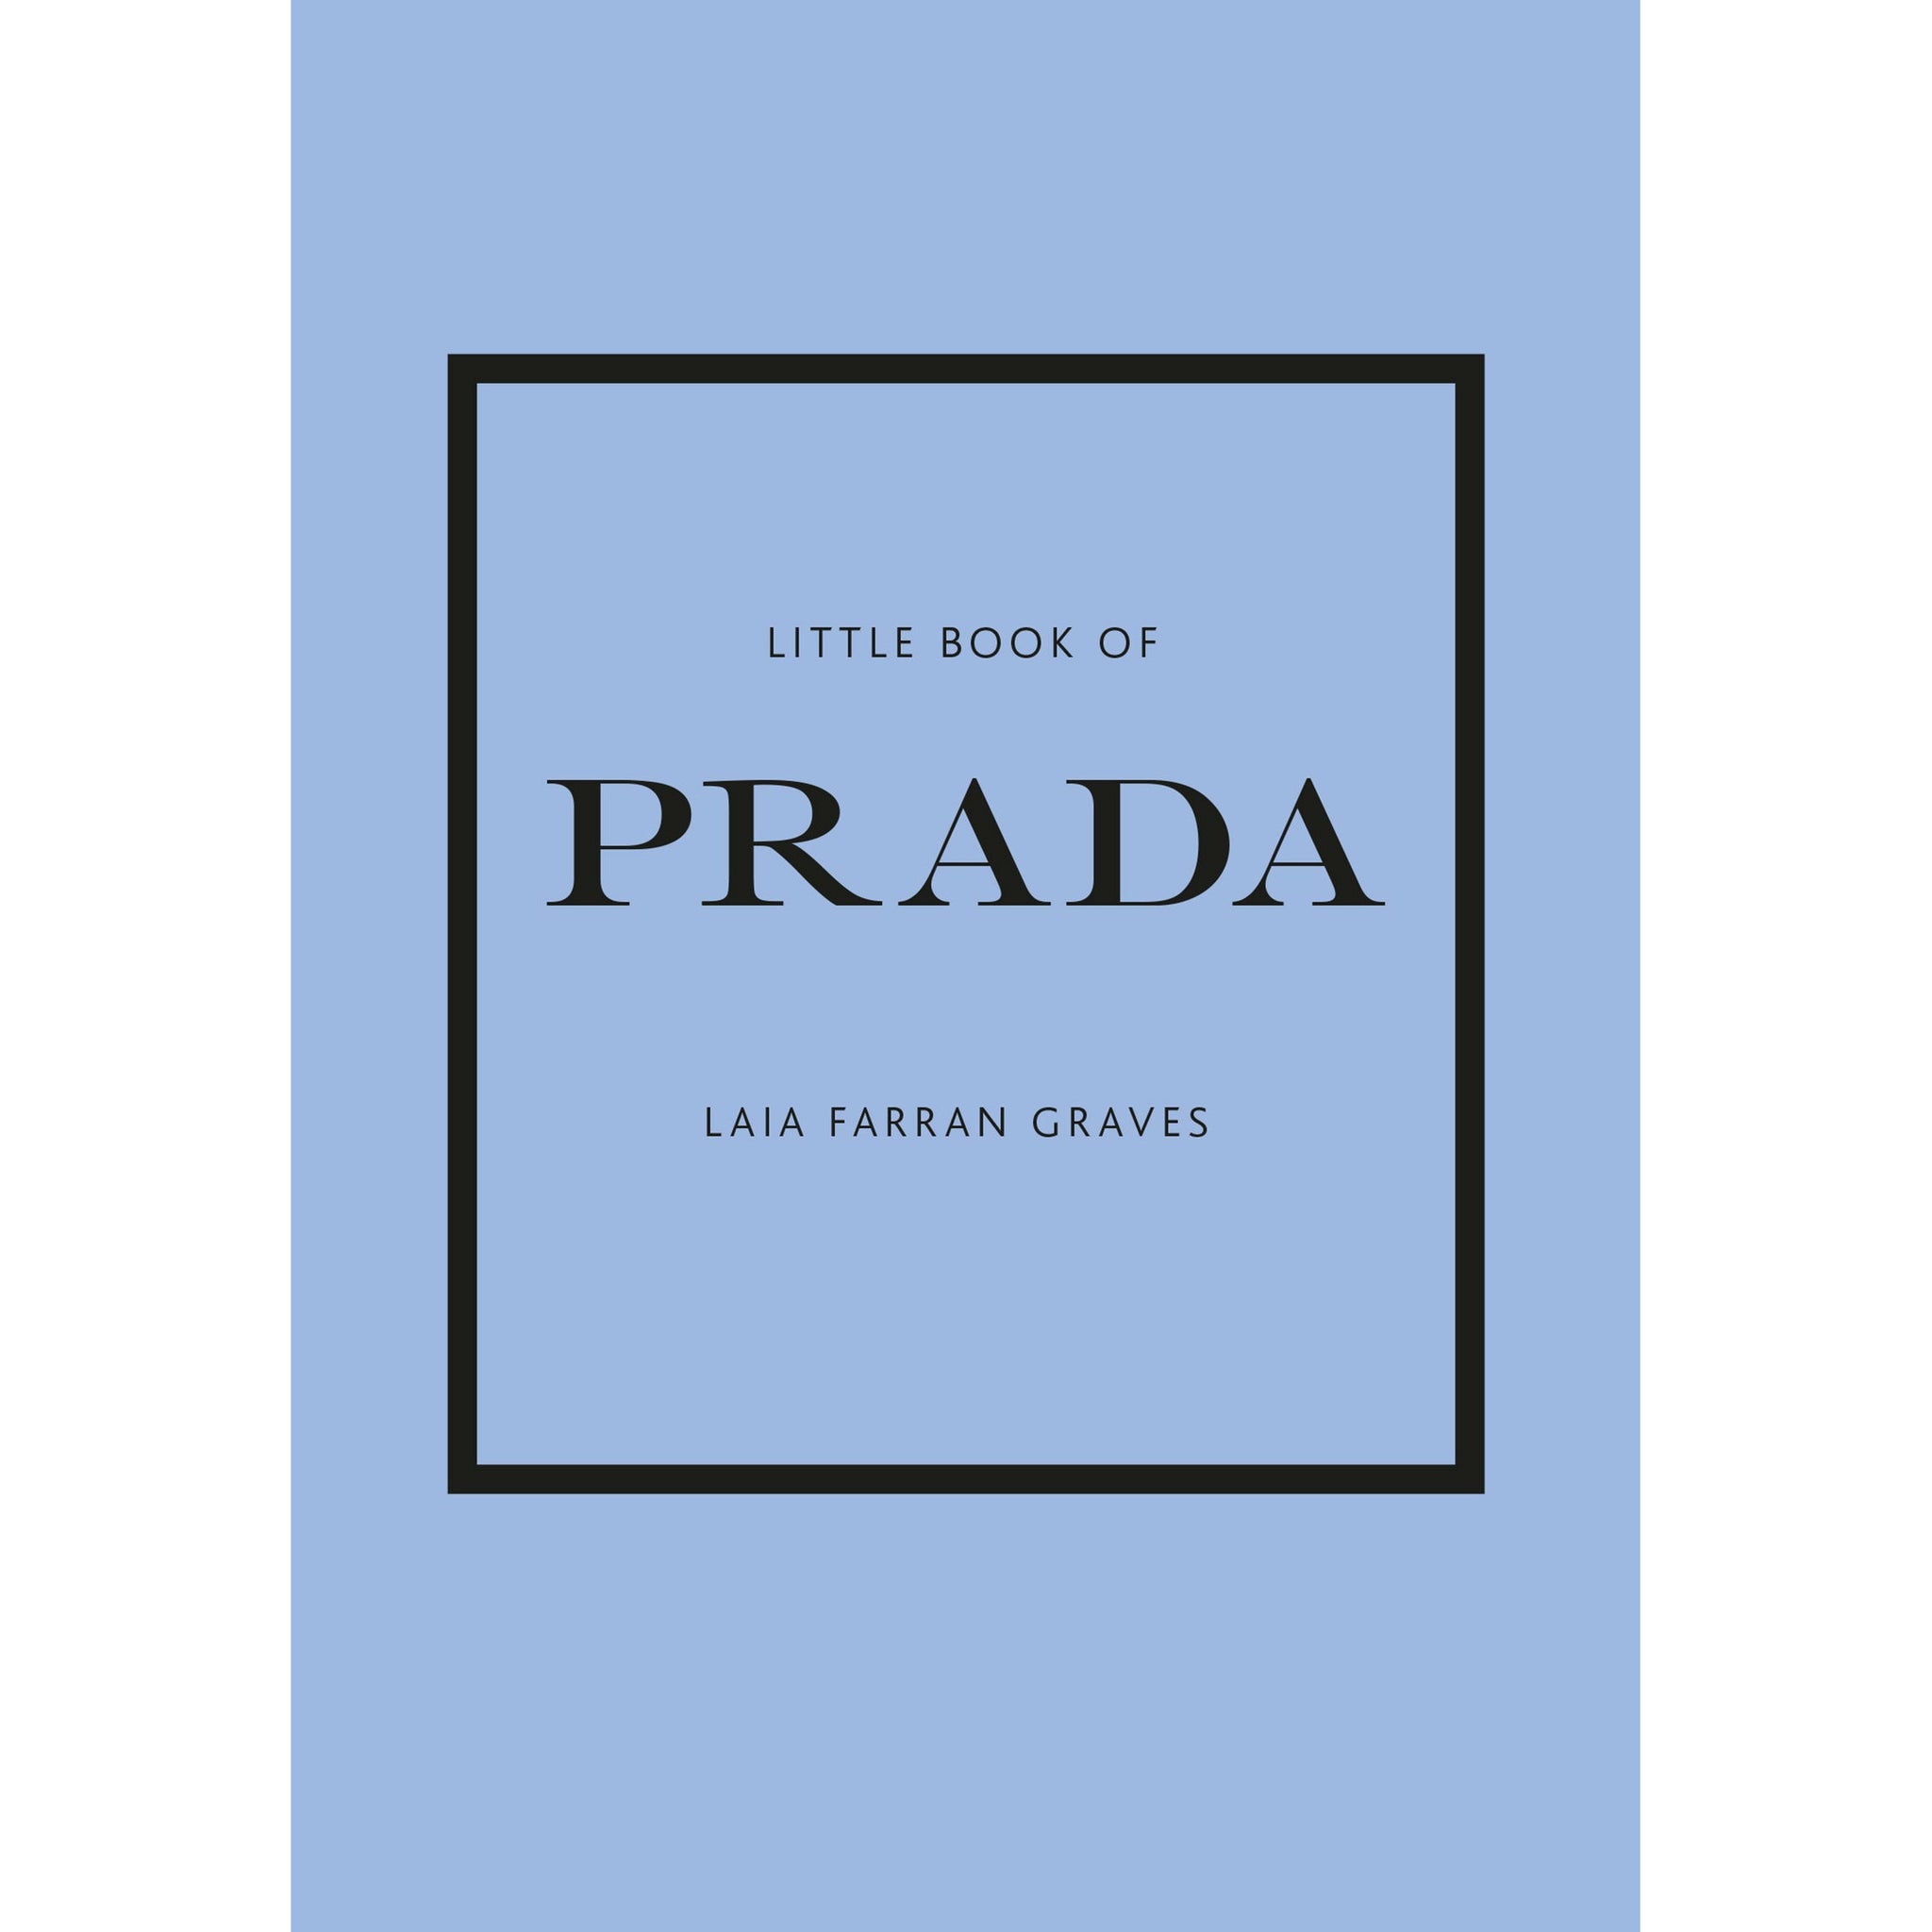 Little Book of Prada [Book]